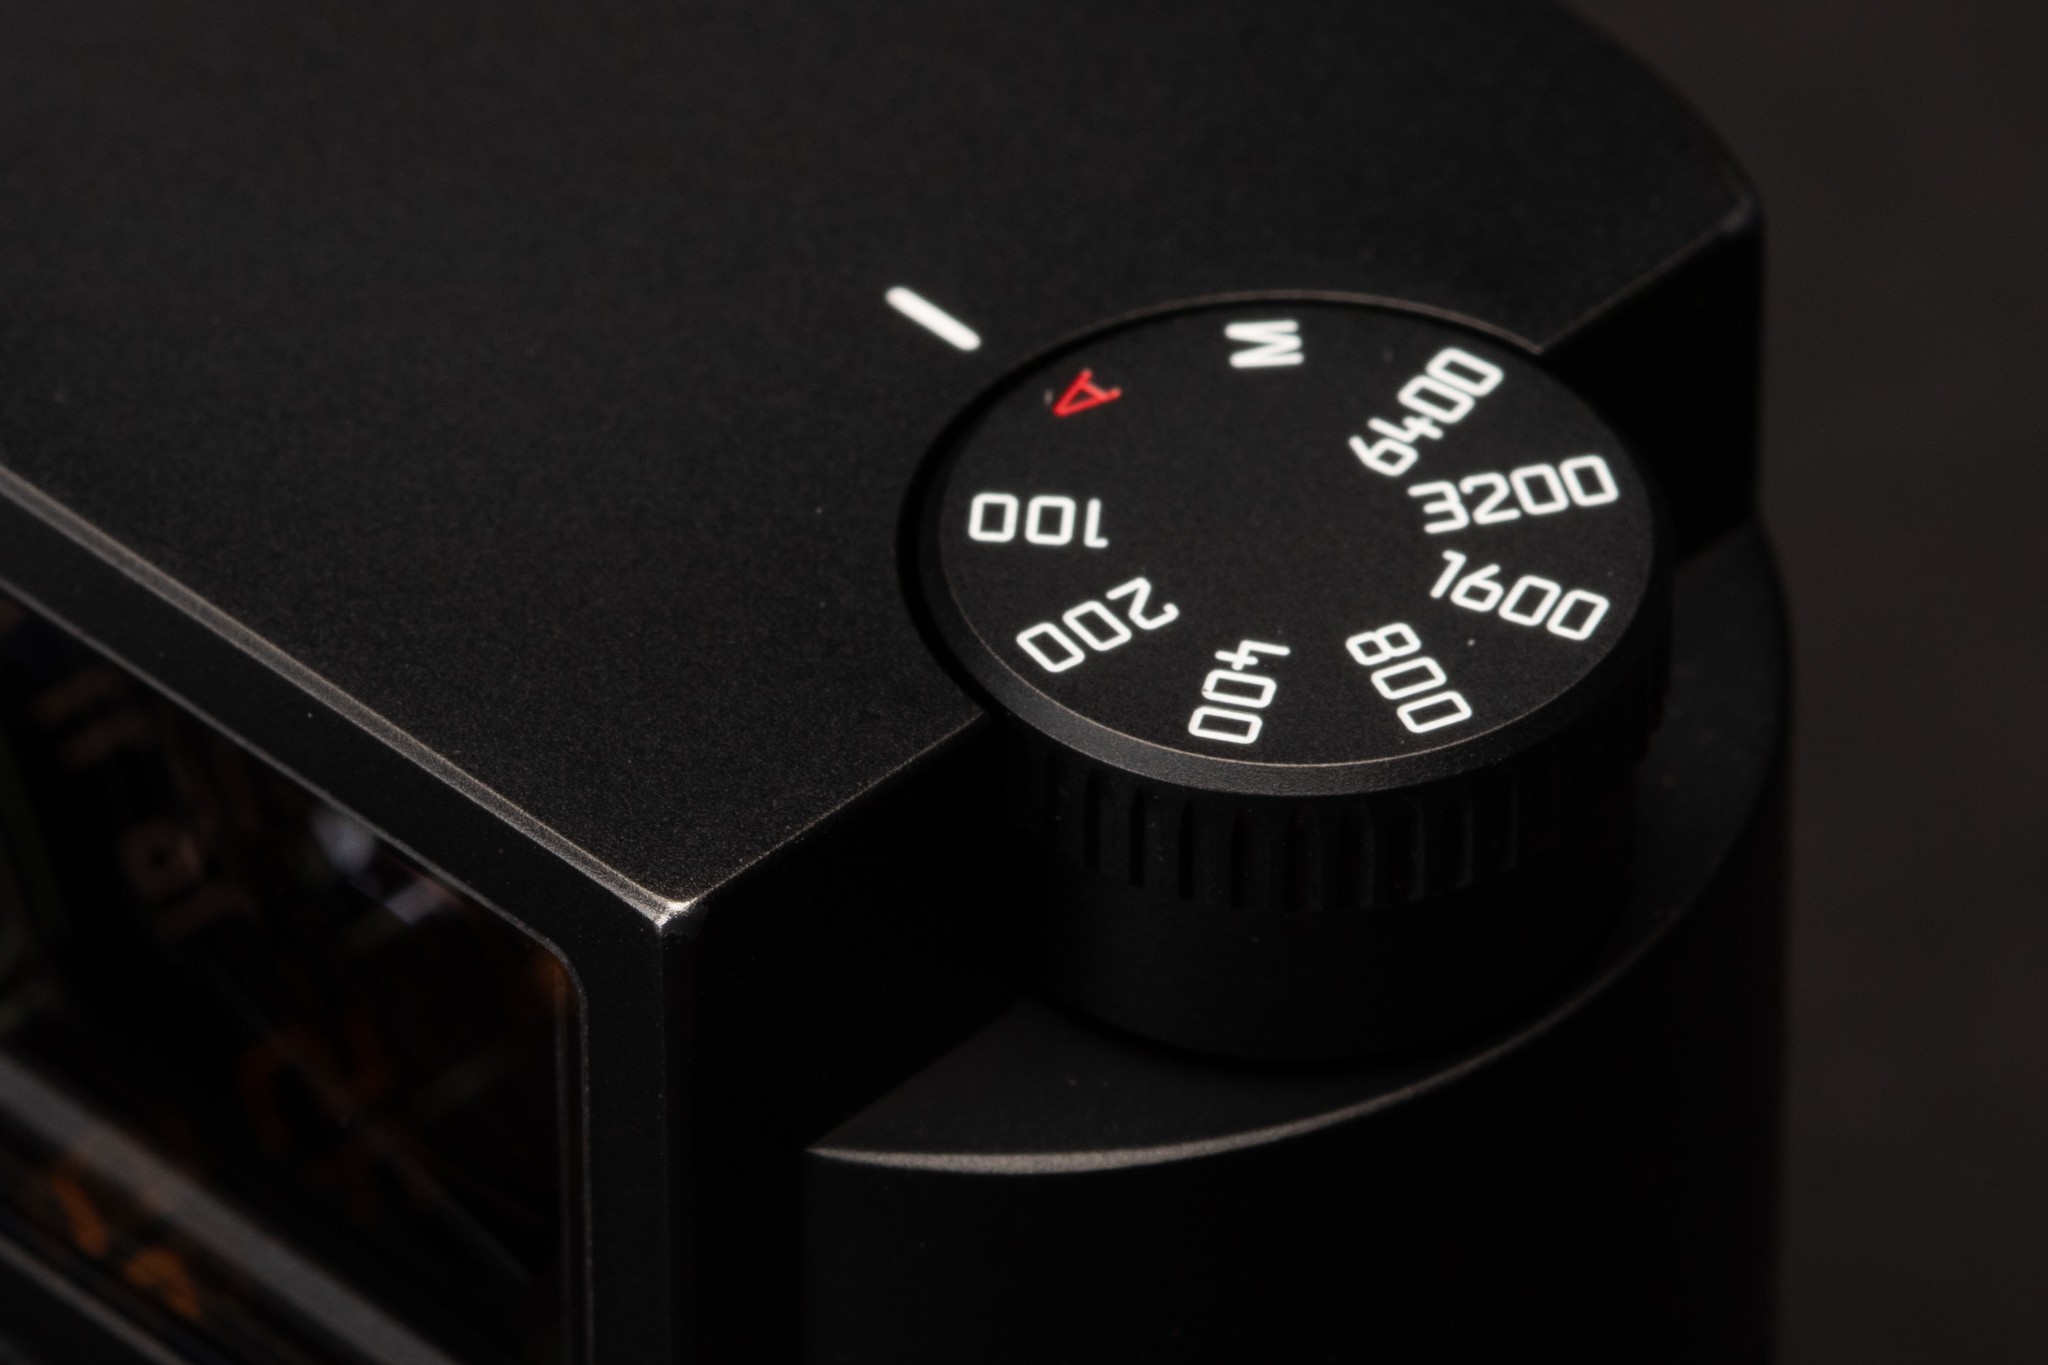 Leica chính thức ra mắt M10-R với cảm biến độ phân giải 40MP, giá chỉ gần 200 triệu